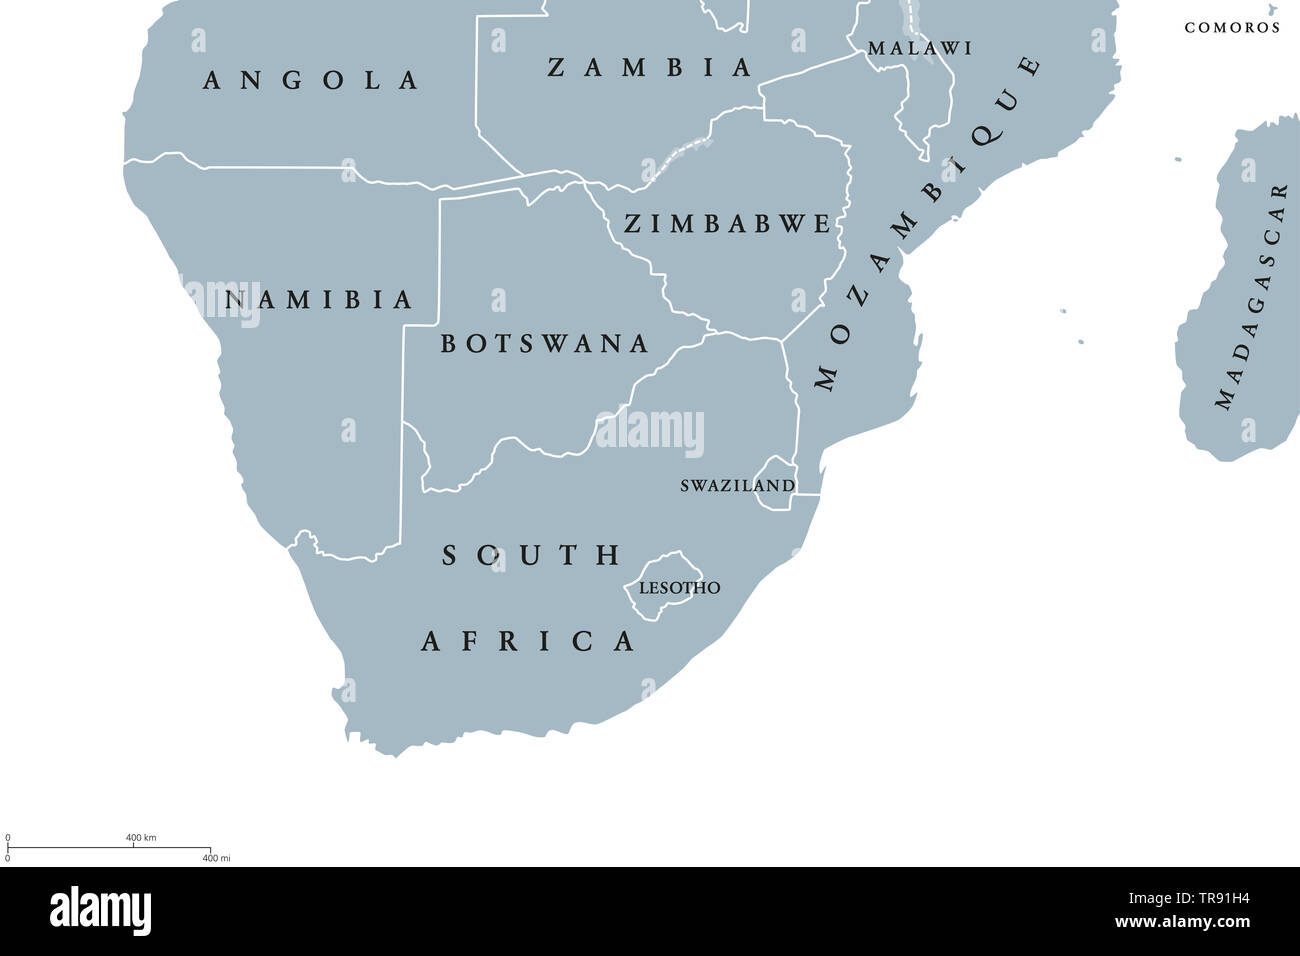 L'Afrique du Sud carte politique de la région. Région la plus méridionale du continent africain. L'Afrique du Sud, Namibie, Botswana, Swaziland et Lesotho. L'anglais. Banque D'Images